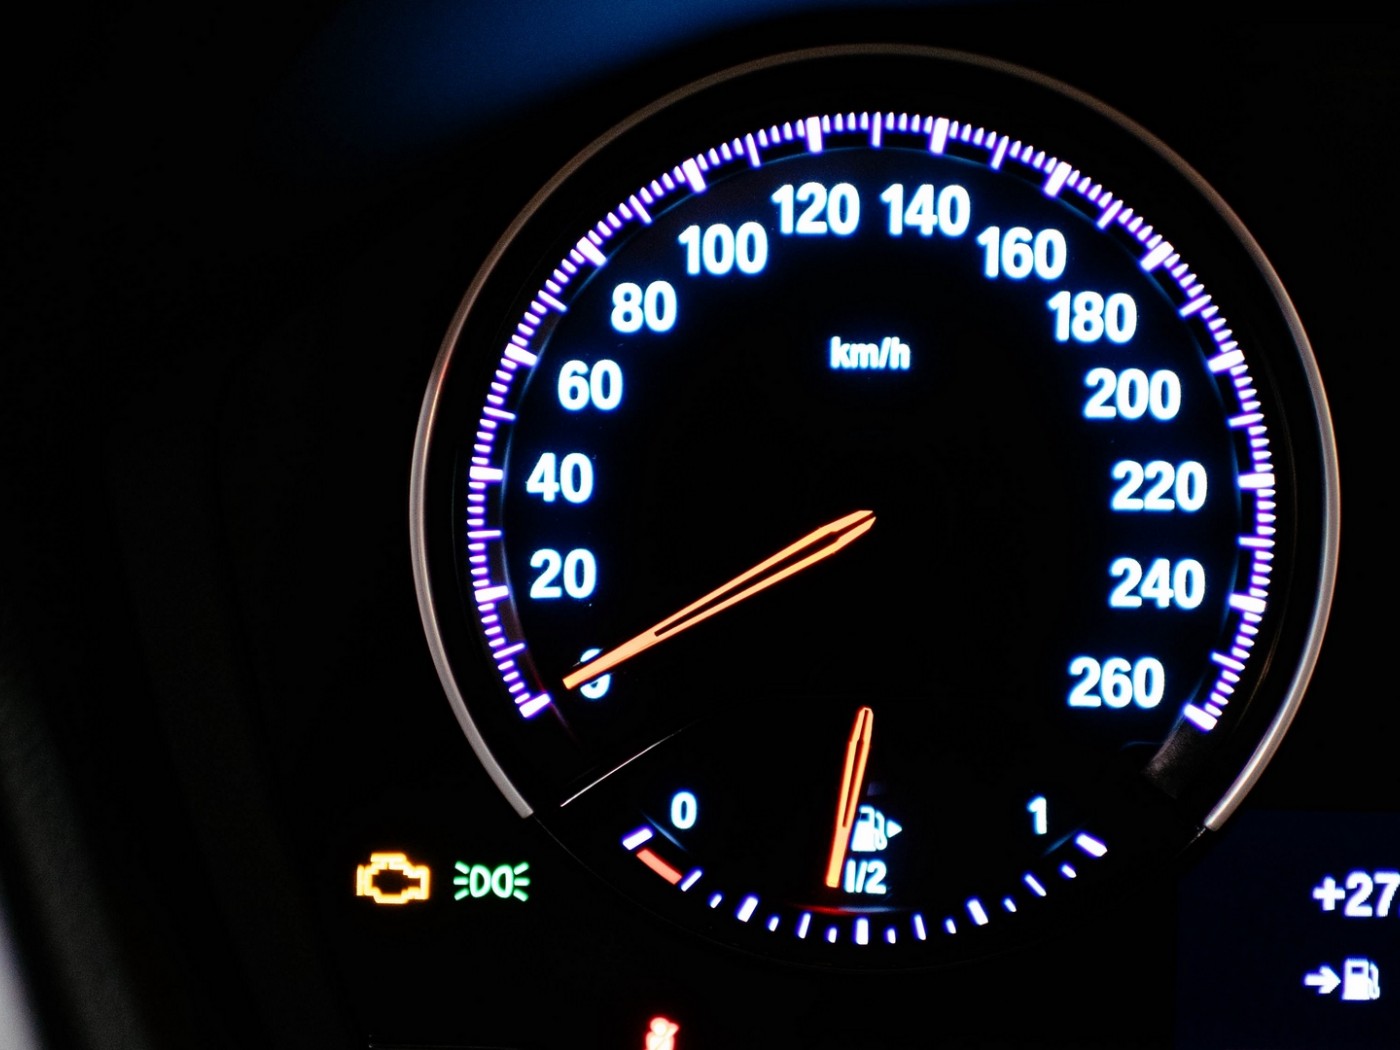 Speedometer numbers HD Wallpaper